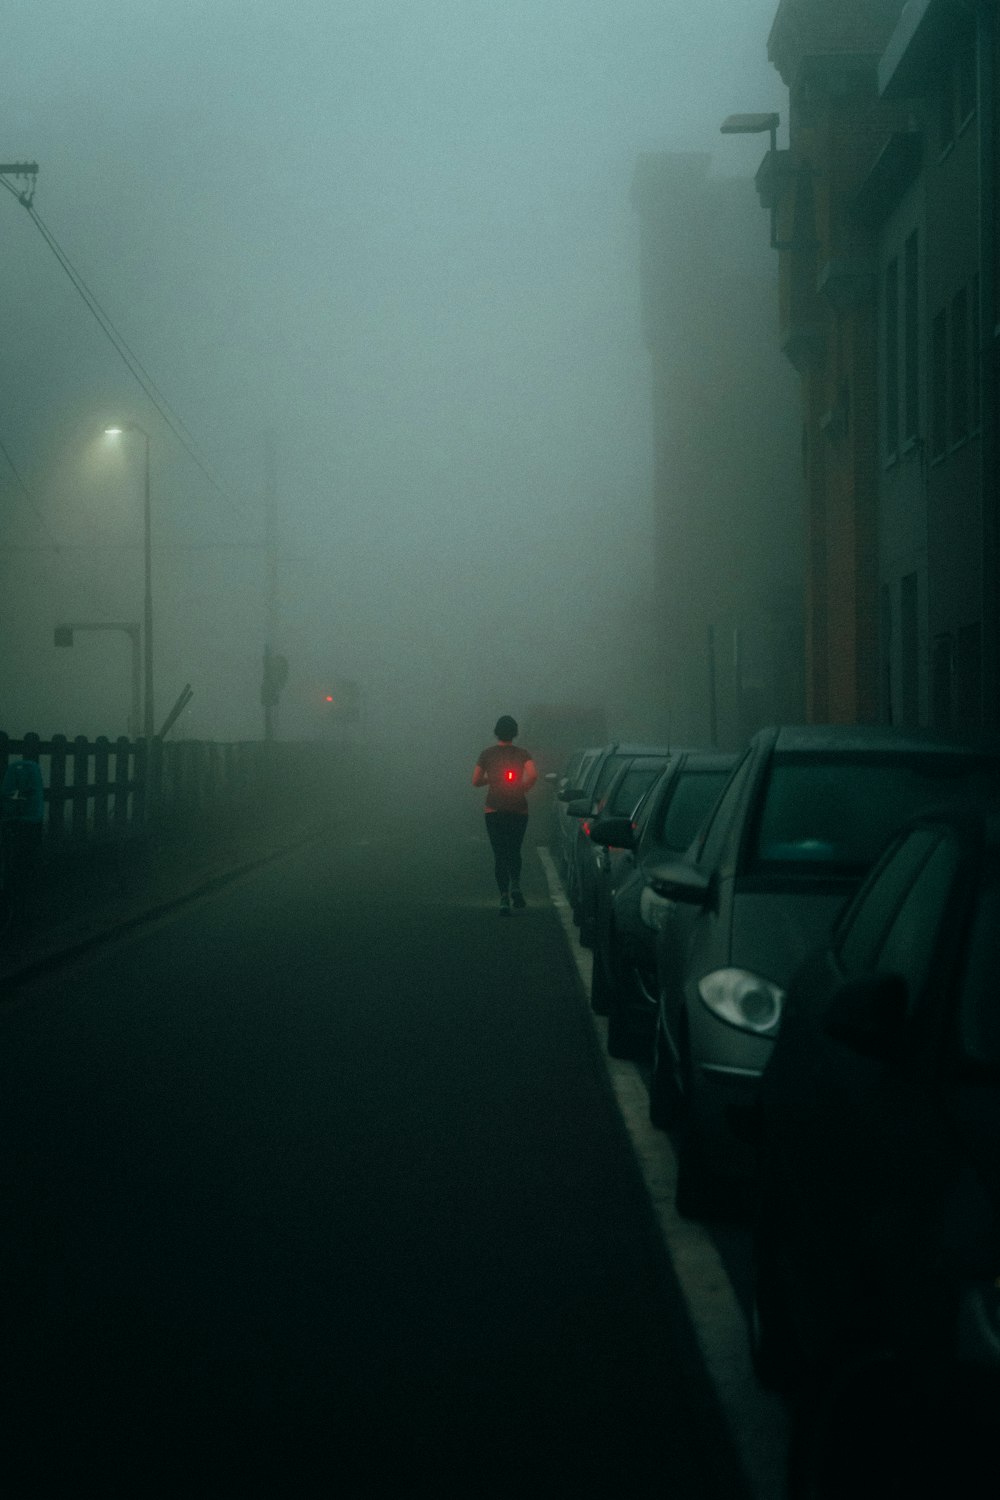 Una persona caminando por una calle en la niebla